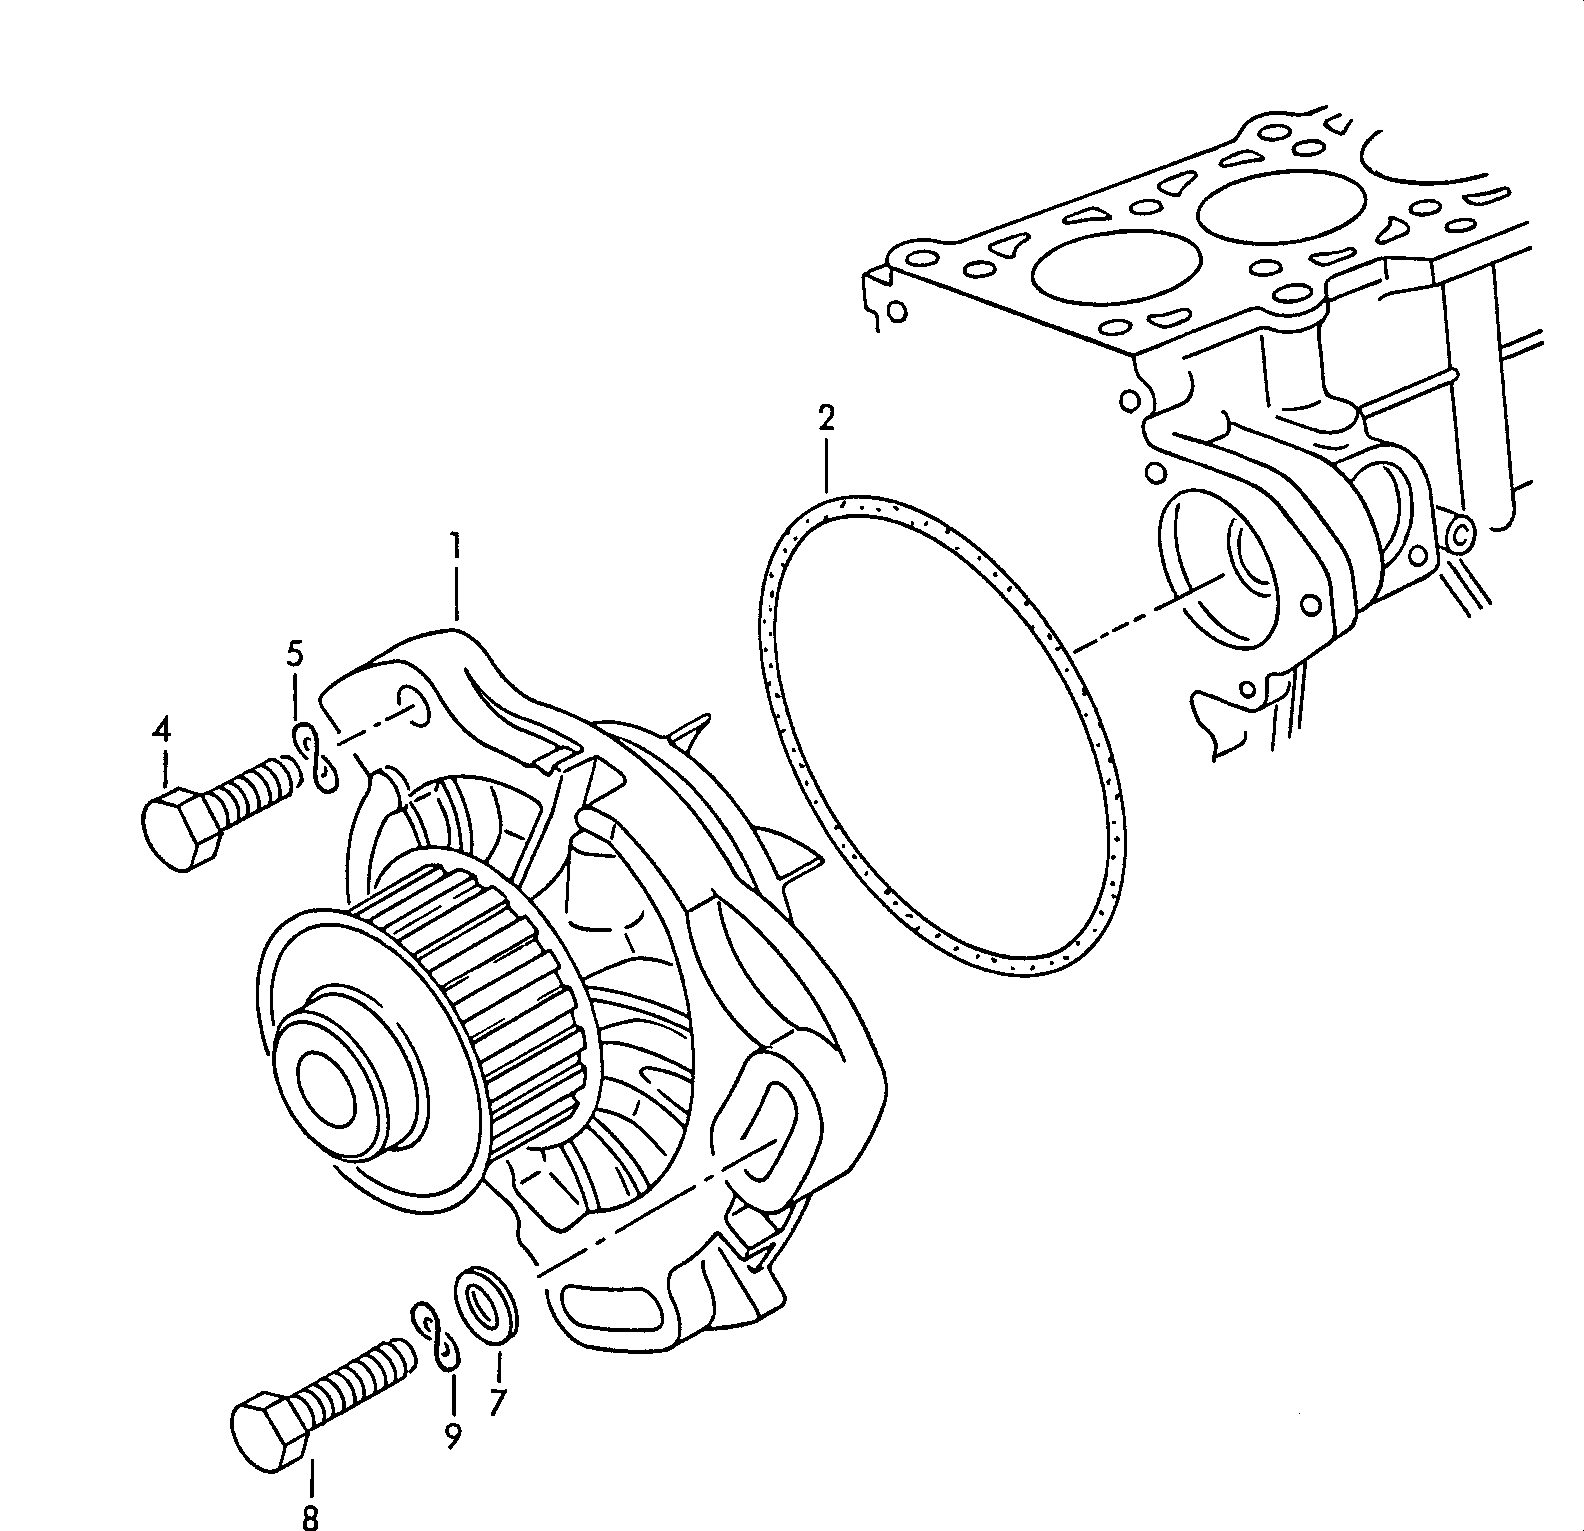 4231 7059 - Diesel-Industrie-Motore - imd